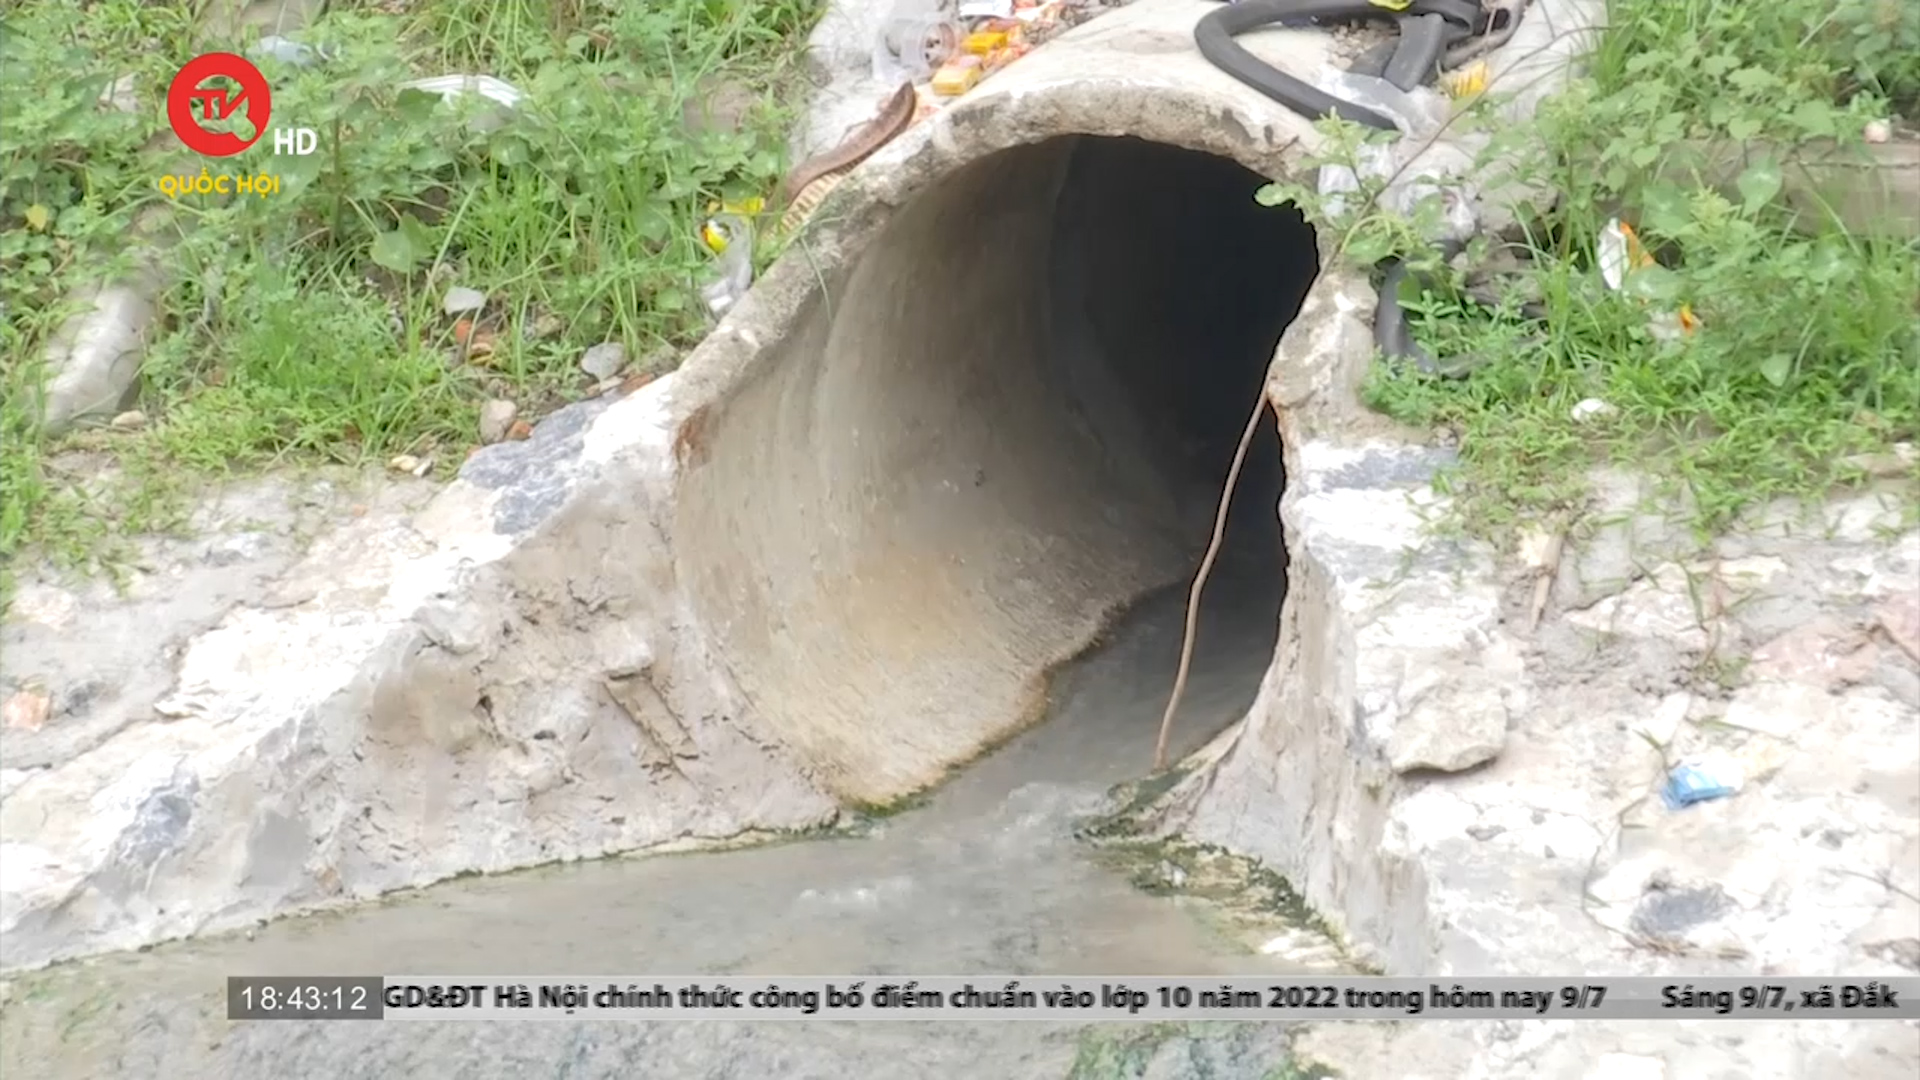 Hà Nội: Đề xuất cải tạo sông Tô Lịch thành công viên văn hóa gặp khó bởi vấn đề ô nhiễm nước